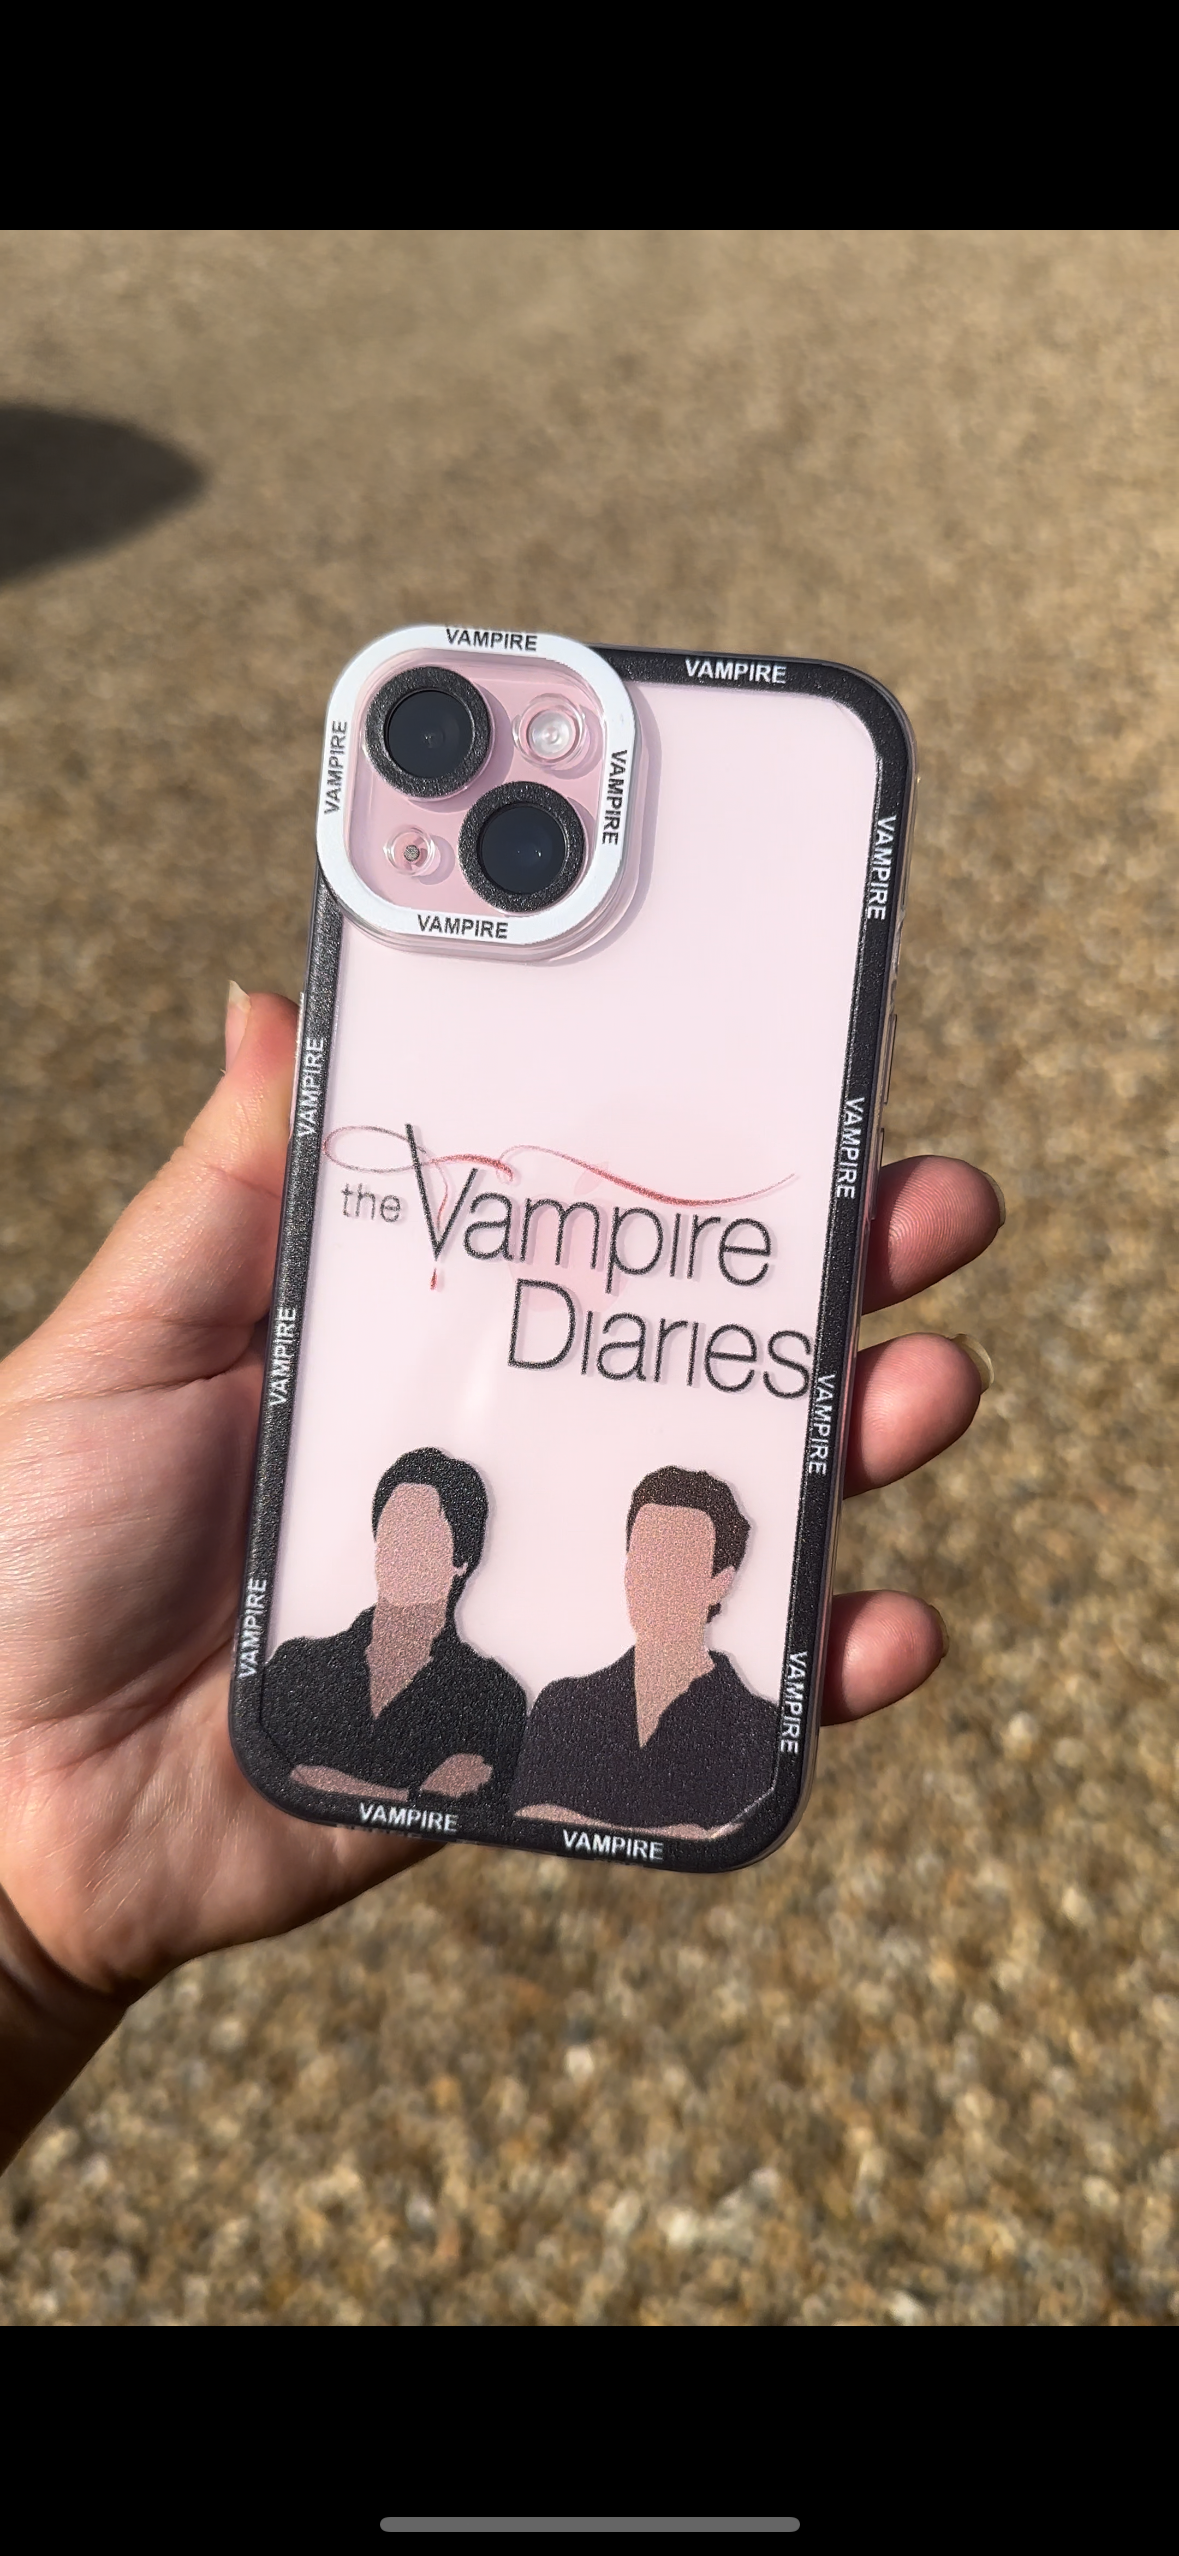 Vampire diaries phone cases